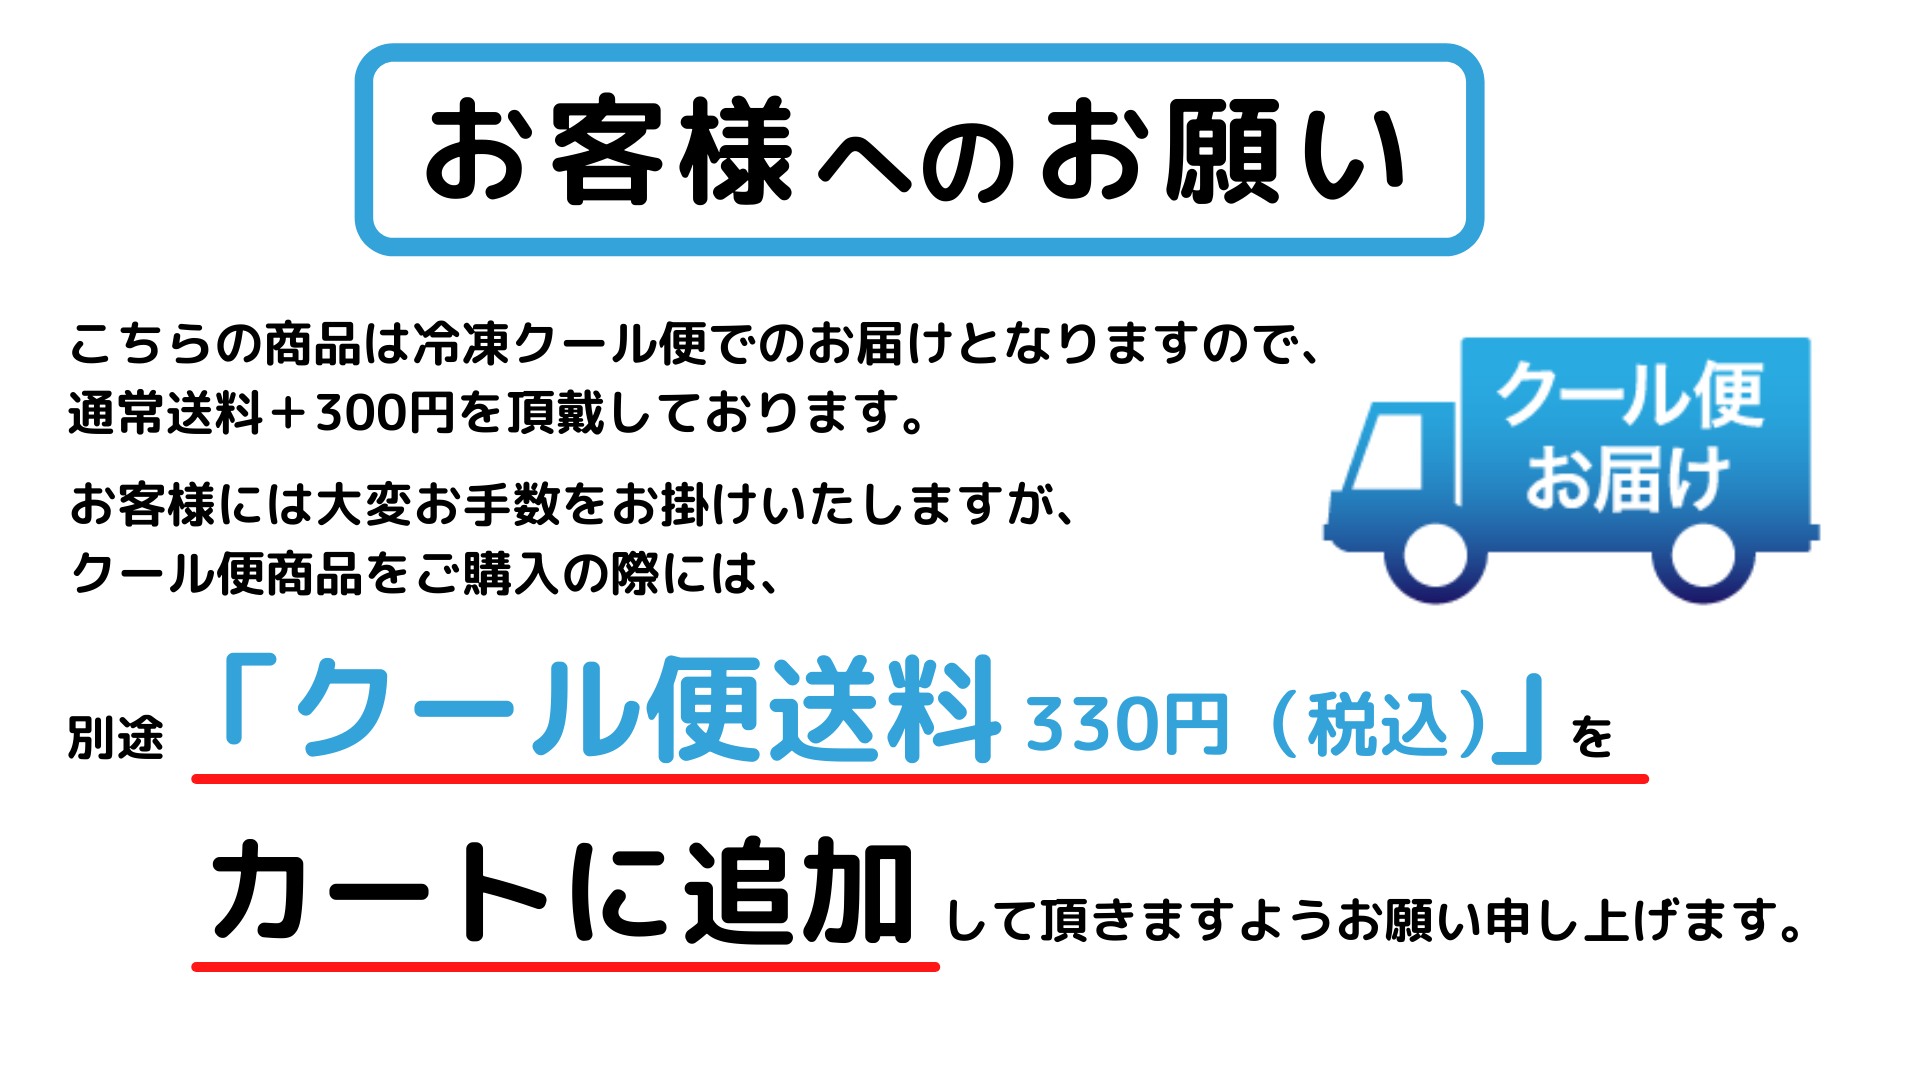 クール商品をご購入の際は、「クール便送料330円」をカートへ追加頂きますようお願い致します。